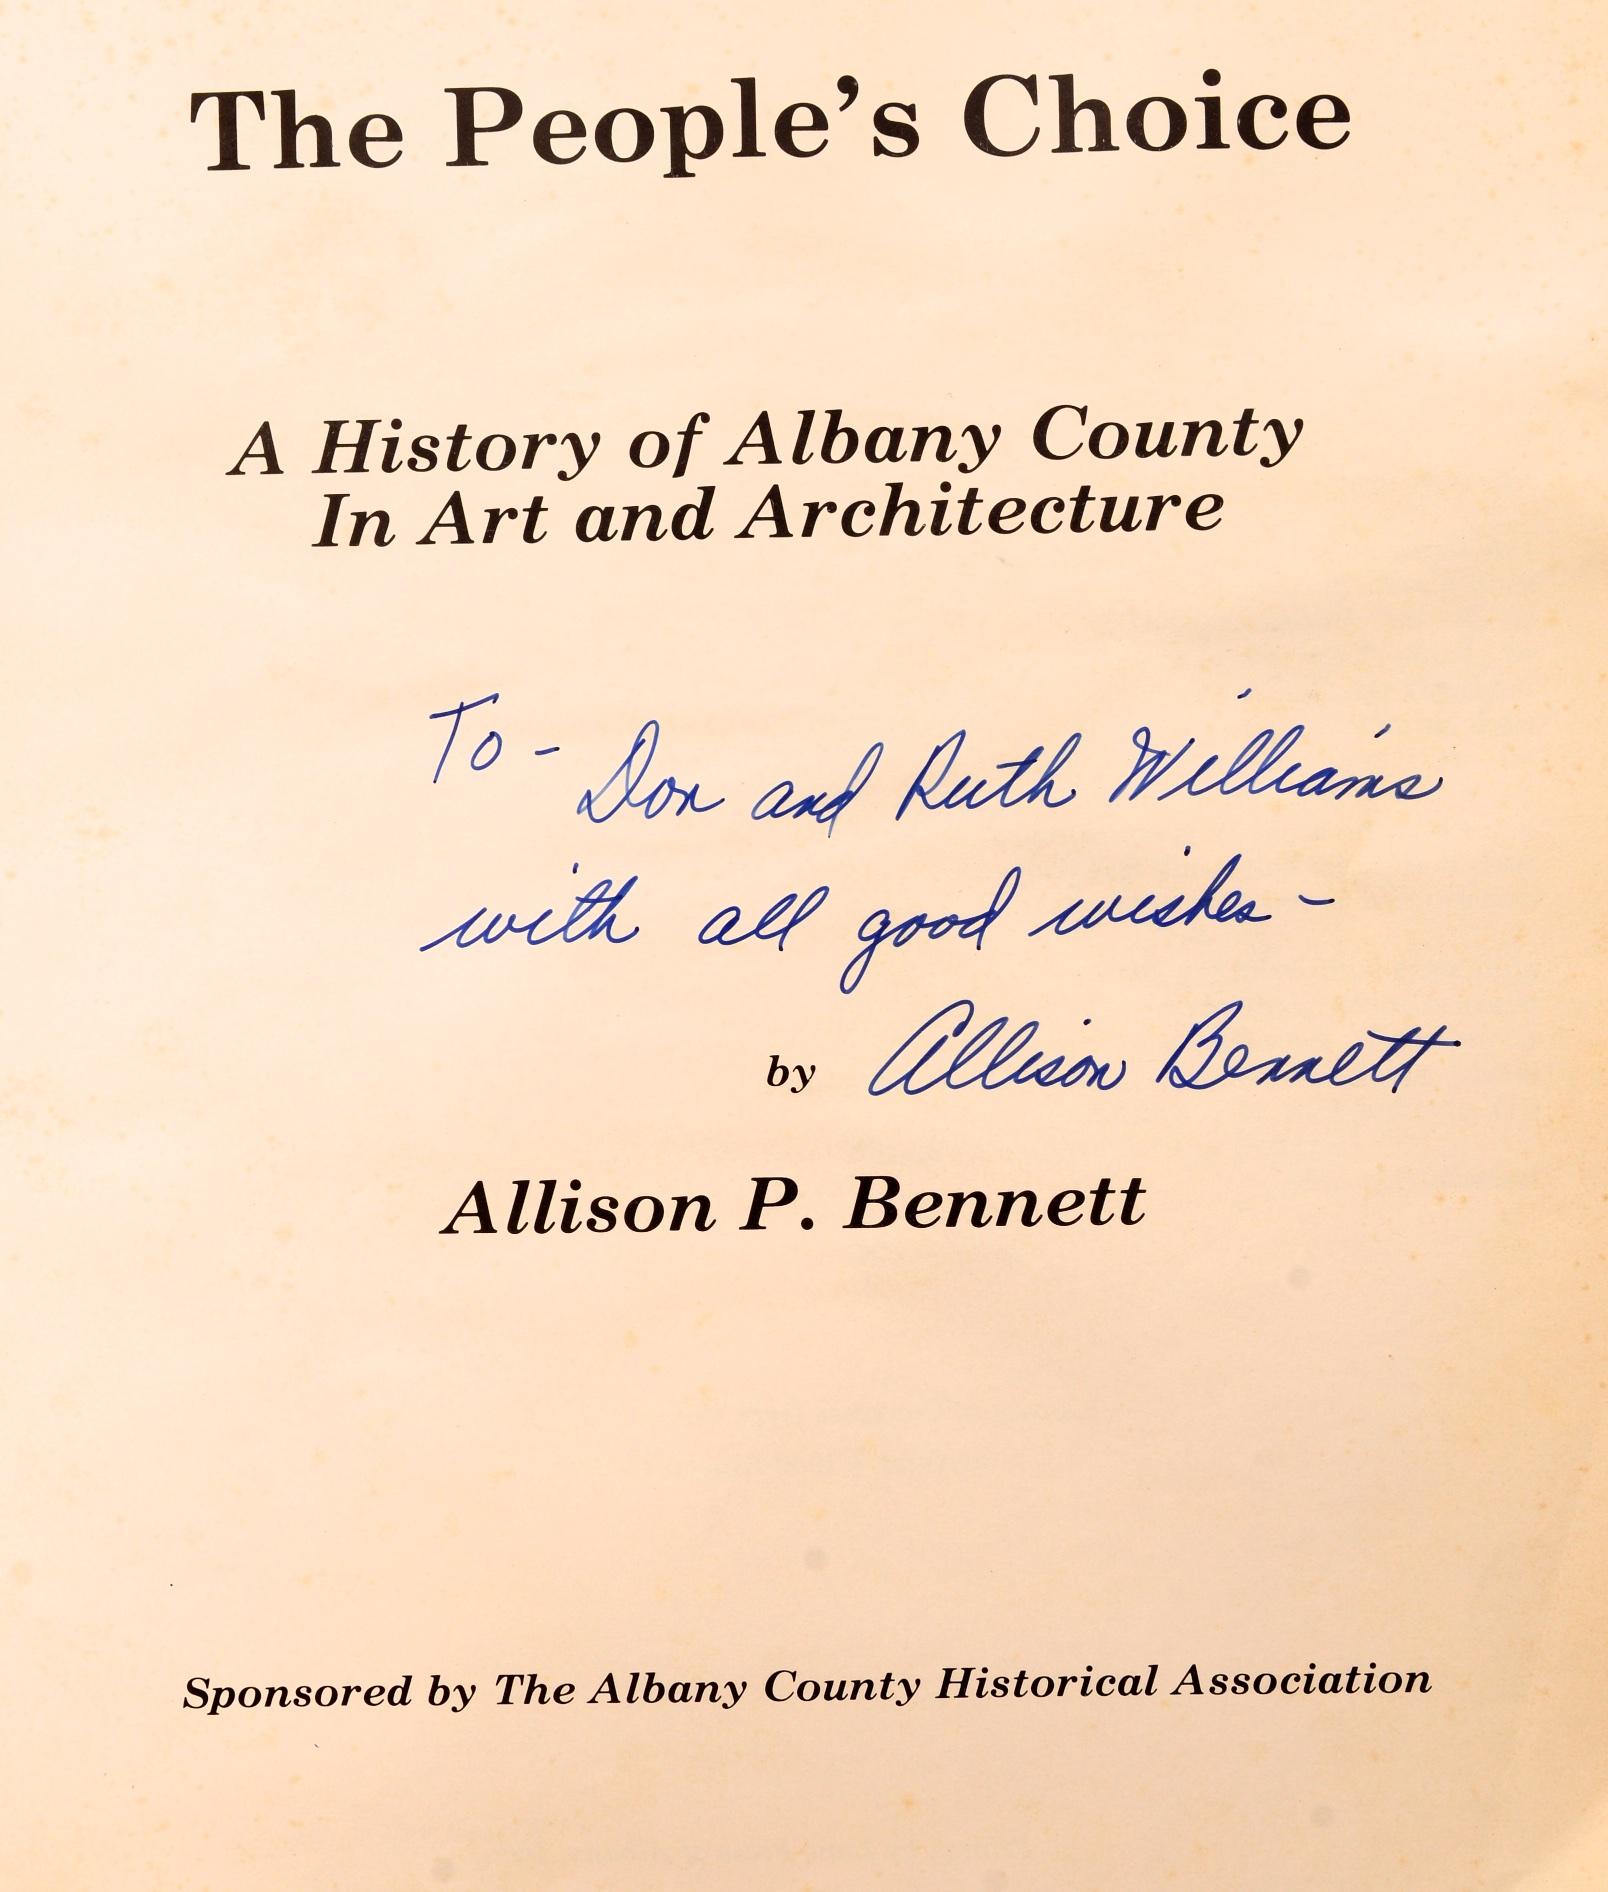 Le choix du peuple : Une histoire du comté d'Albany dans l'art et l'architecture par Allison P. Bennett. Albany County Historical Association, Lane Press, Albany, 1980. Inscrit par l'auteur. Première édition à couverture souple. Largement illustré